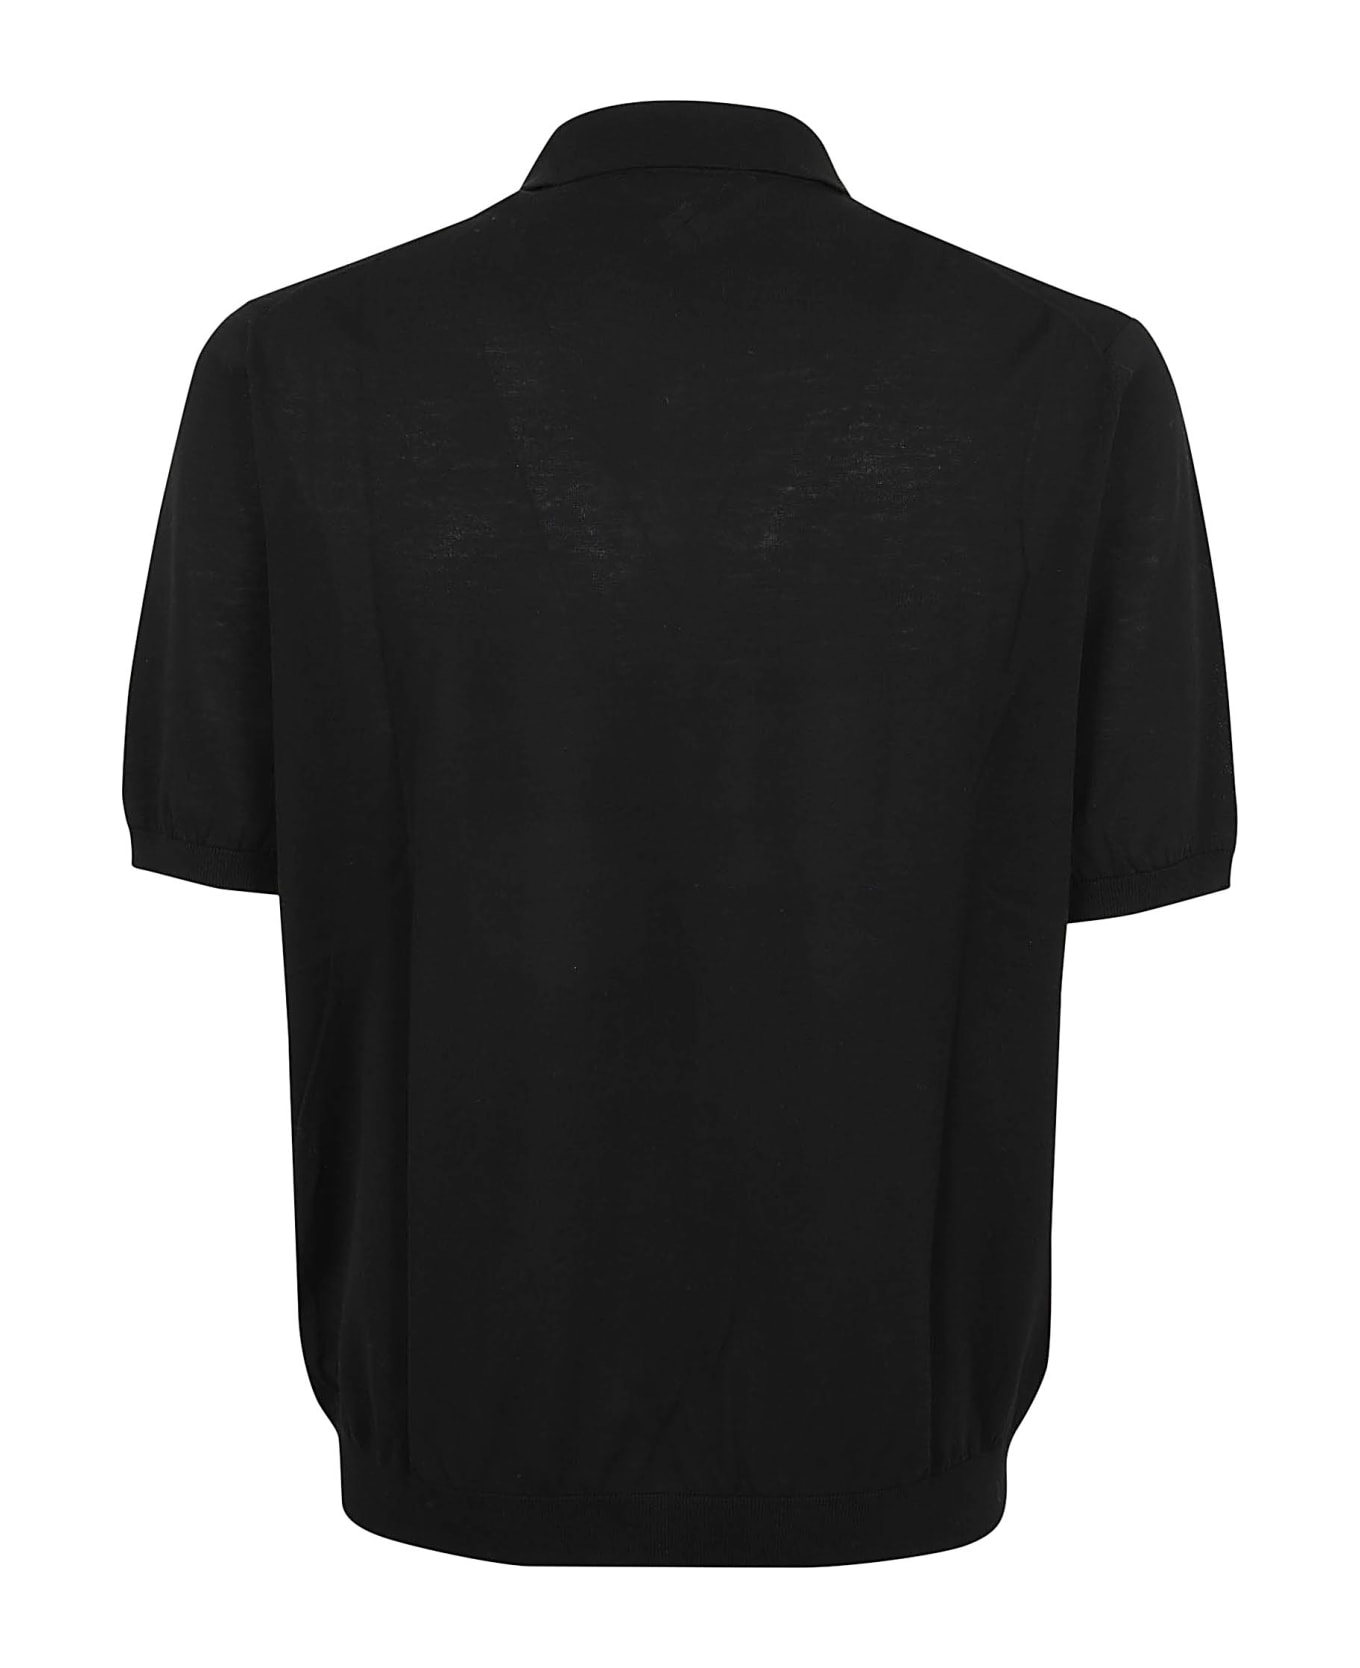 Ballantyne Polo Neck Pullover - Black